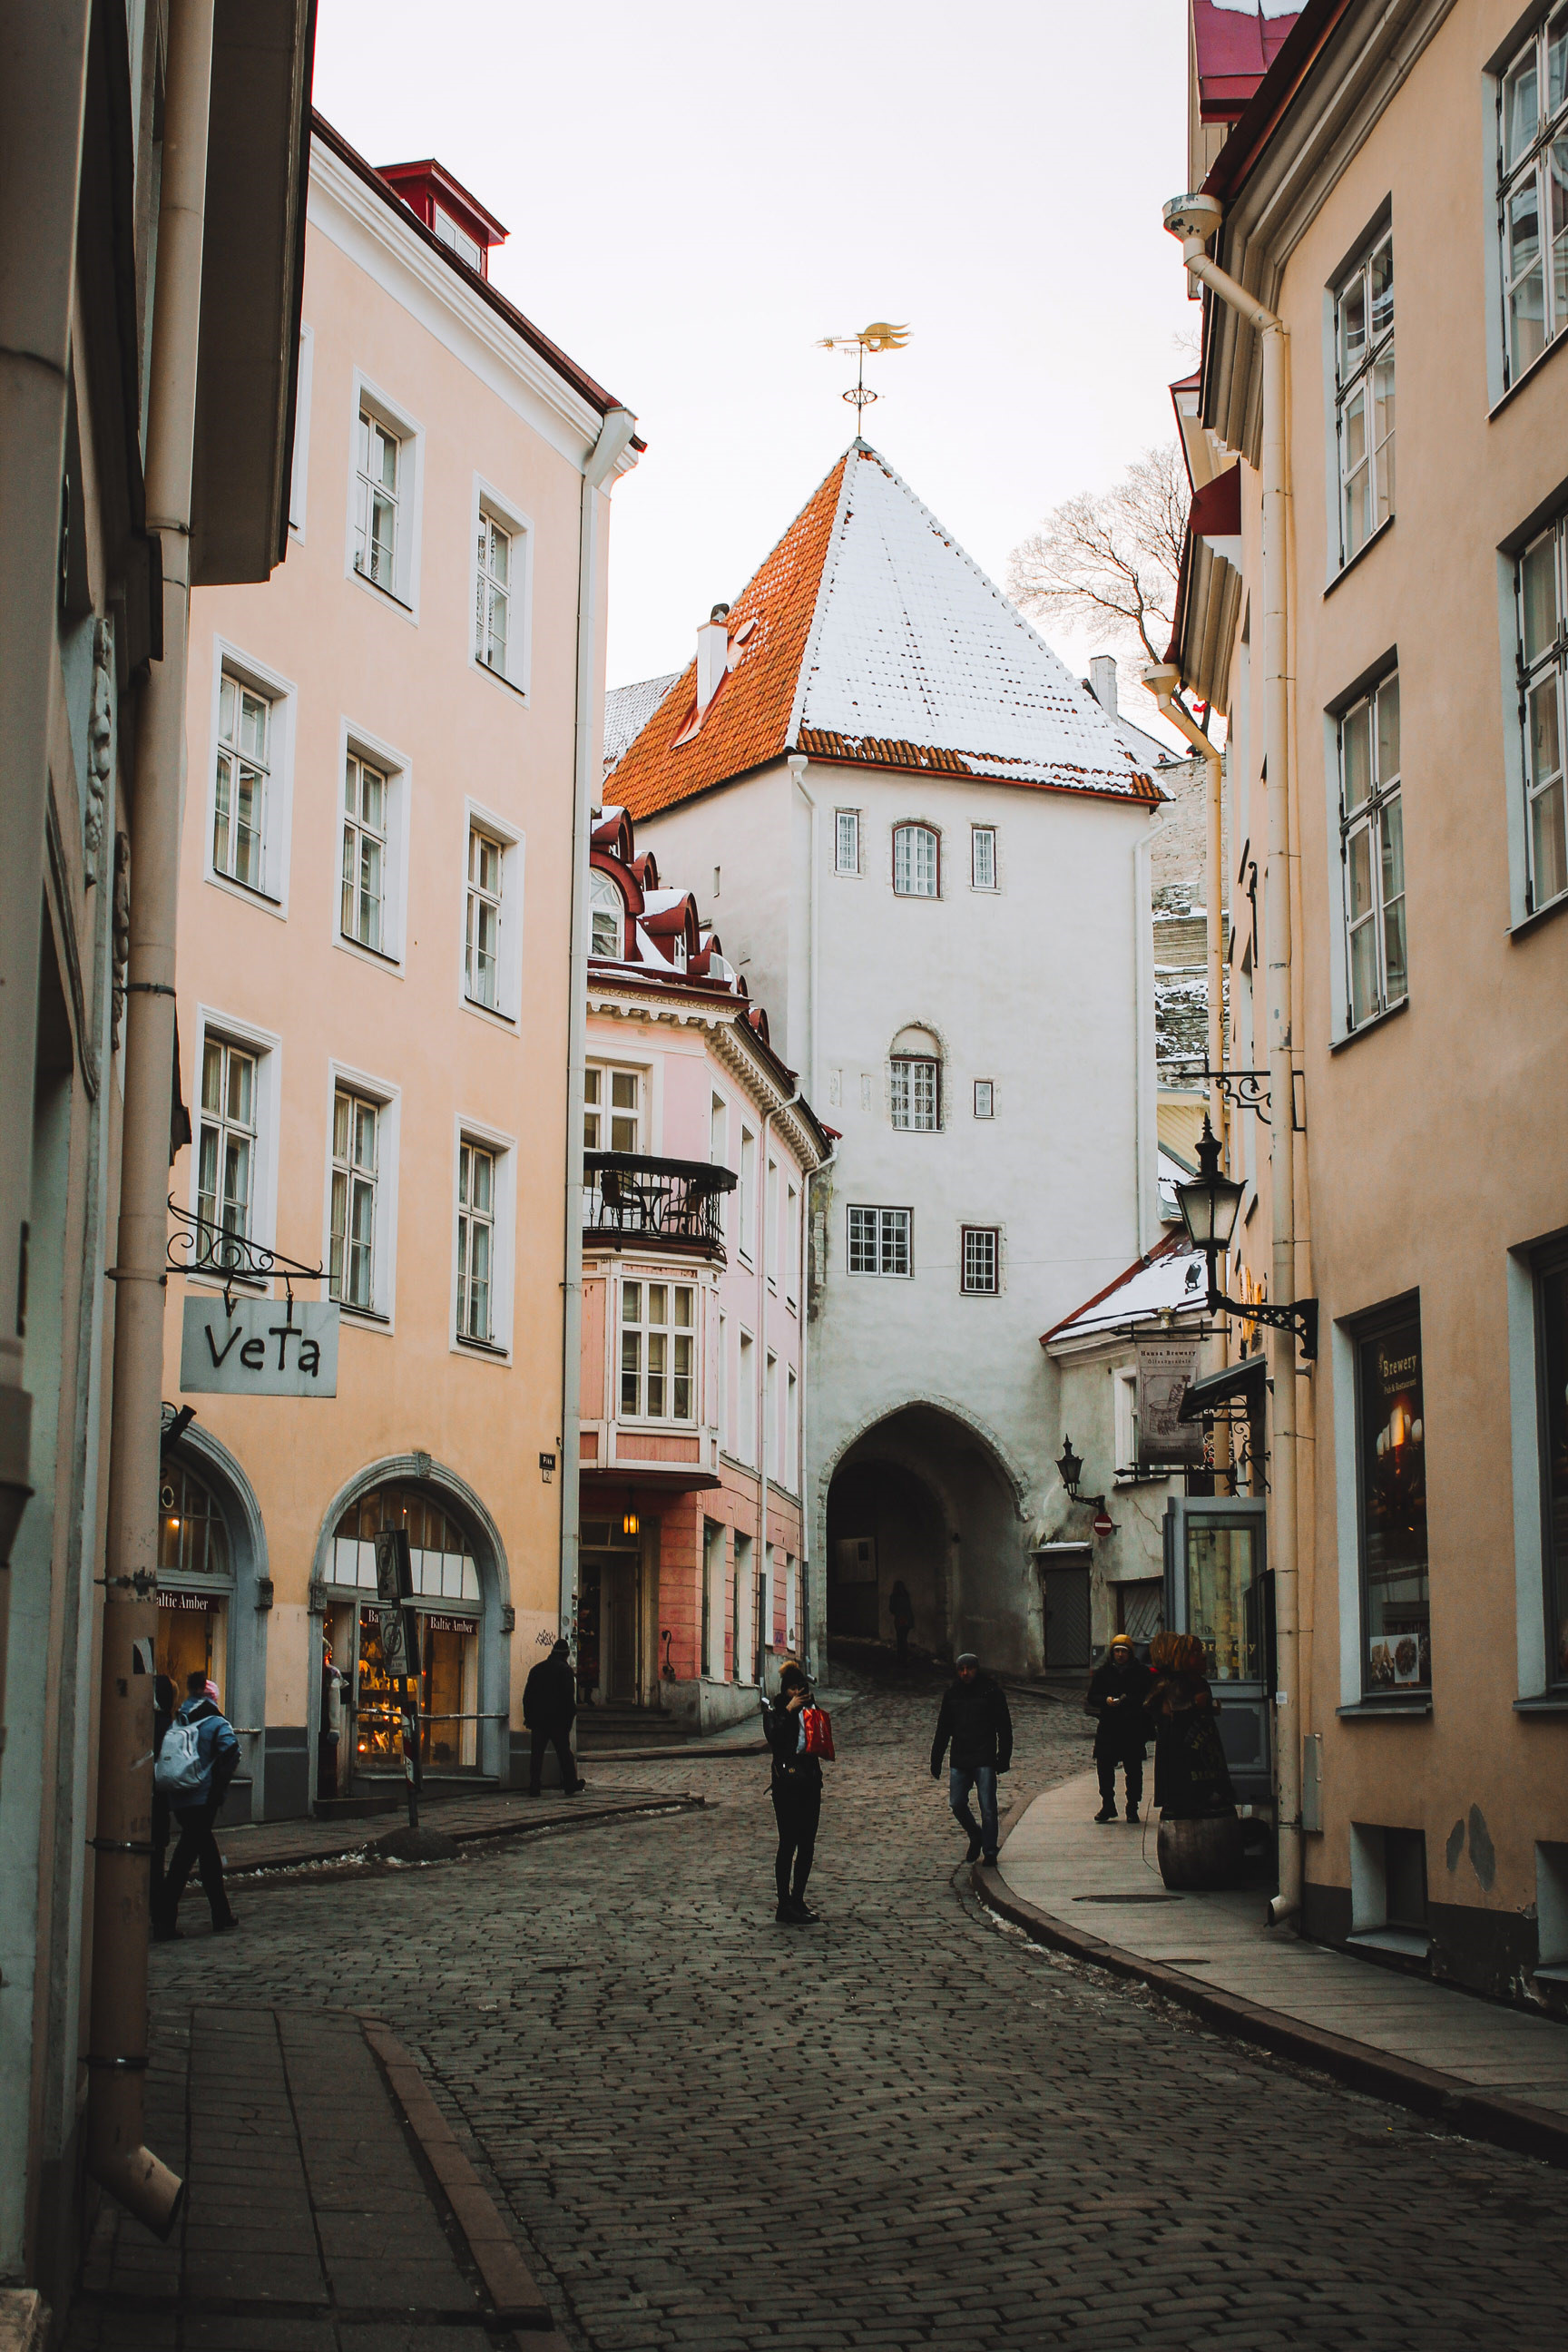 Mặc cho bao thay đổi của thiên nhiên, chính trị và biến động kinh tế, Tallinn vẫn giữ nguyên nét kiến trúc Hanseatic đặc trưng từ thời Trung cổ. Vẻ đẹp cổ kính của thành phố gần như không phai tàn theo năm tháng với những tuyến phố lát đá, những ngôi nhà cổ kính được xây dựng từ thế kỷ 13. Năm 1997, phố cổ Tallinn được UNESCO công nhận là di sản thế giới và là Thủ đô Văn hoá châu Âu vào năm 2011.